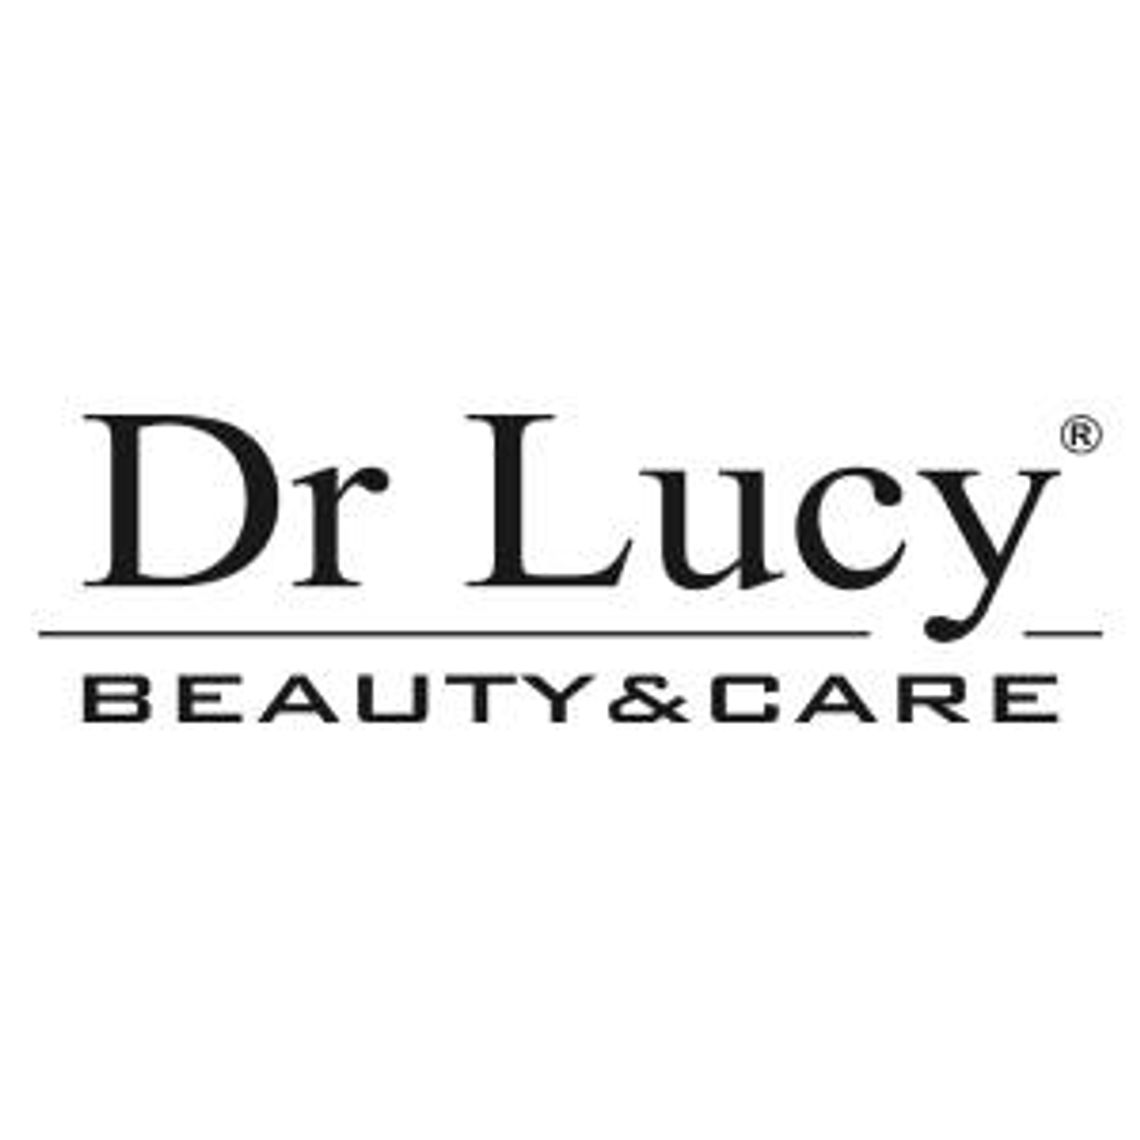 Profesjonalne kosmetyki w formie koncentratu dla psów - Dr Lucy